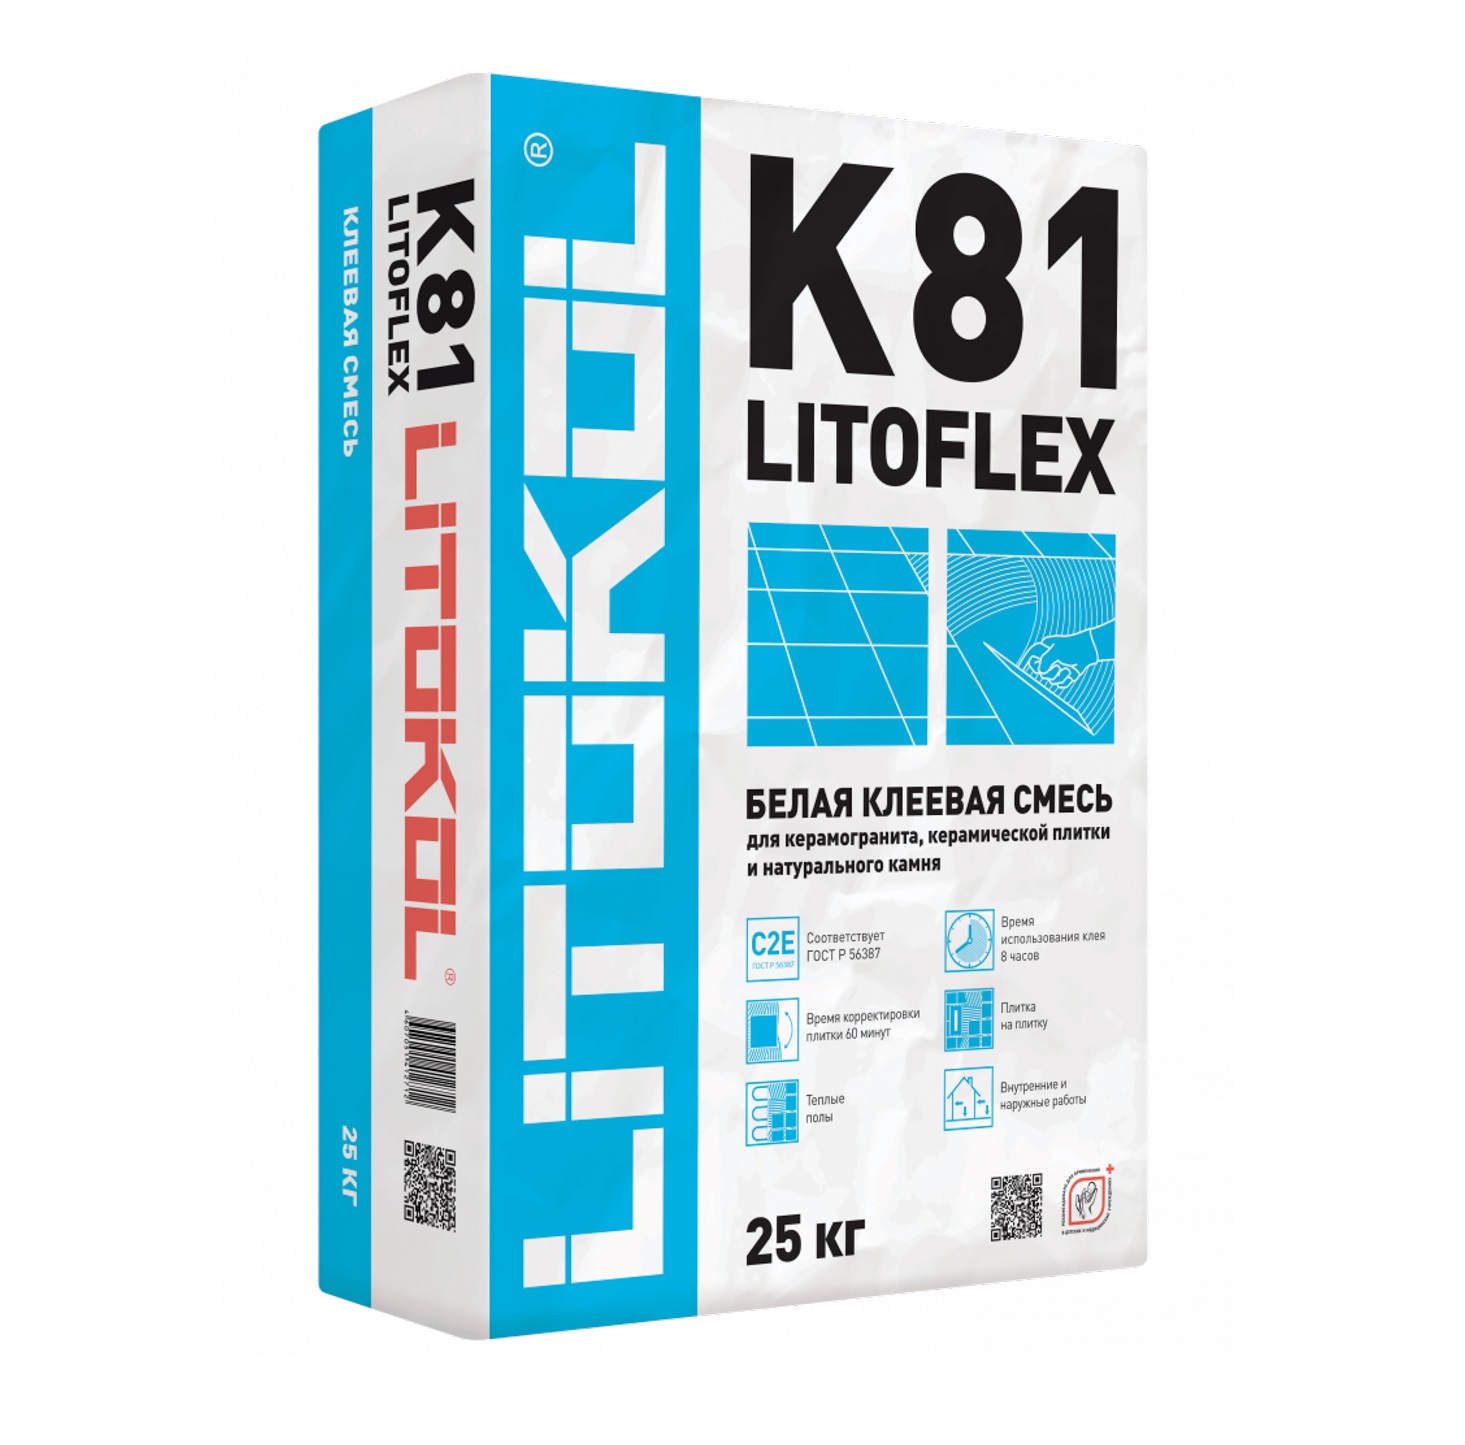    Litoflex K81  25 